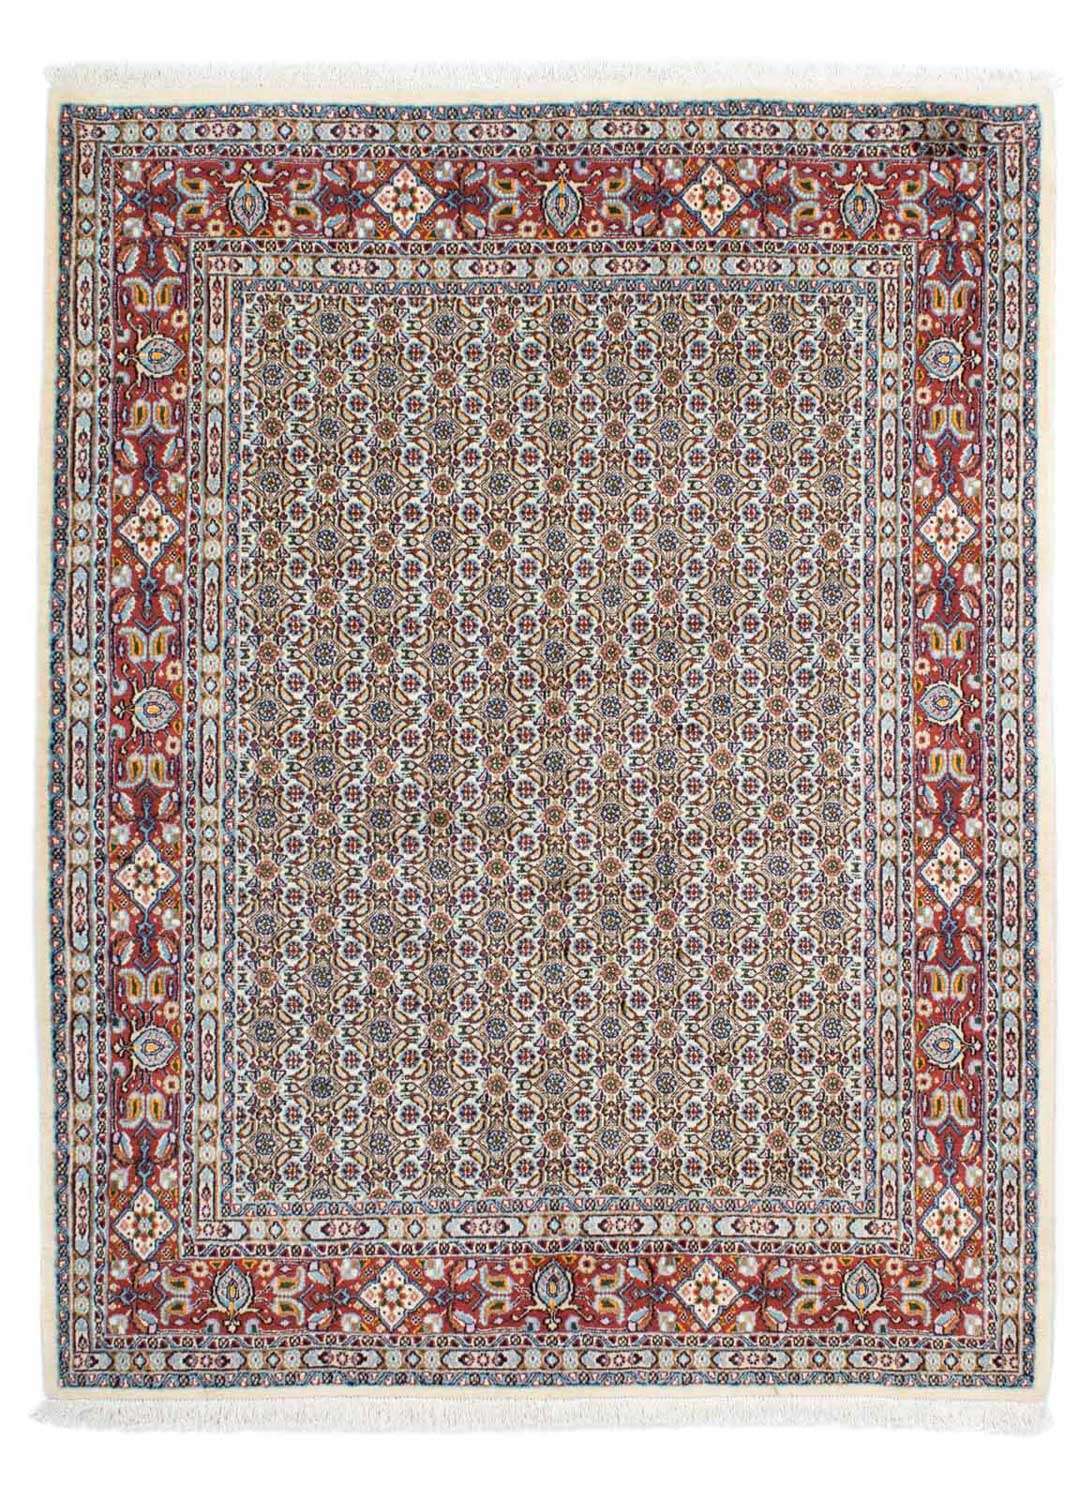 Tapis persan - Classique - 192 x 150 cm - beige